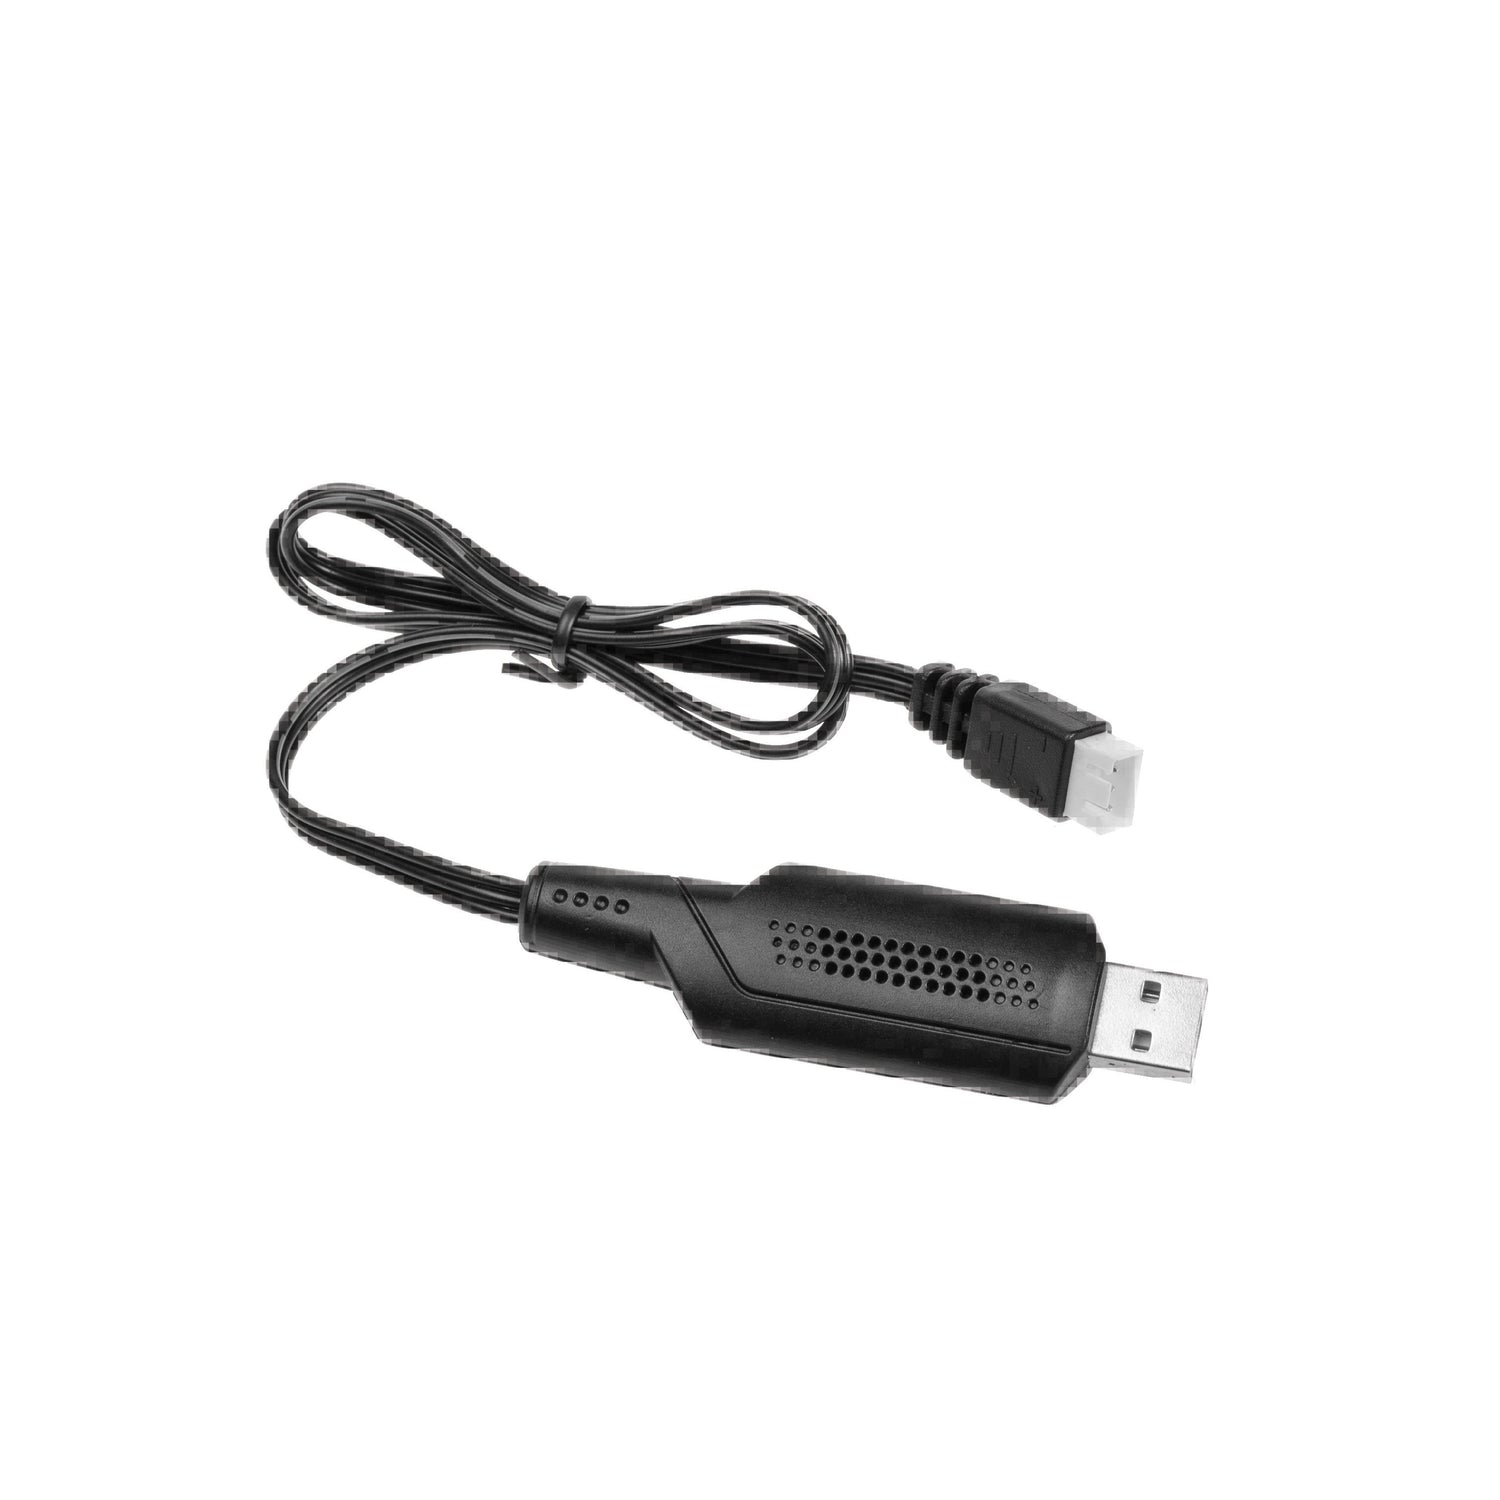 USB Charger - Number LG-DJ03